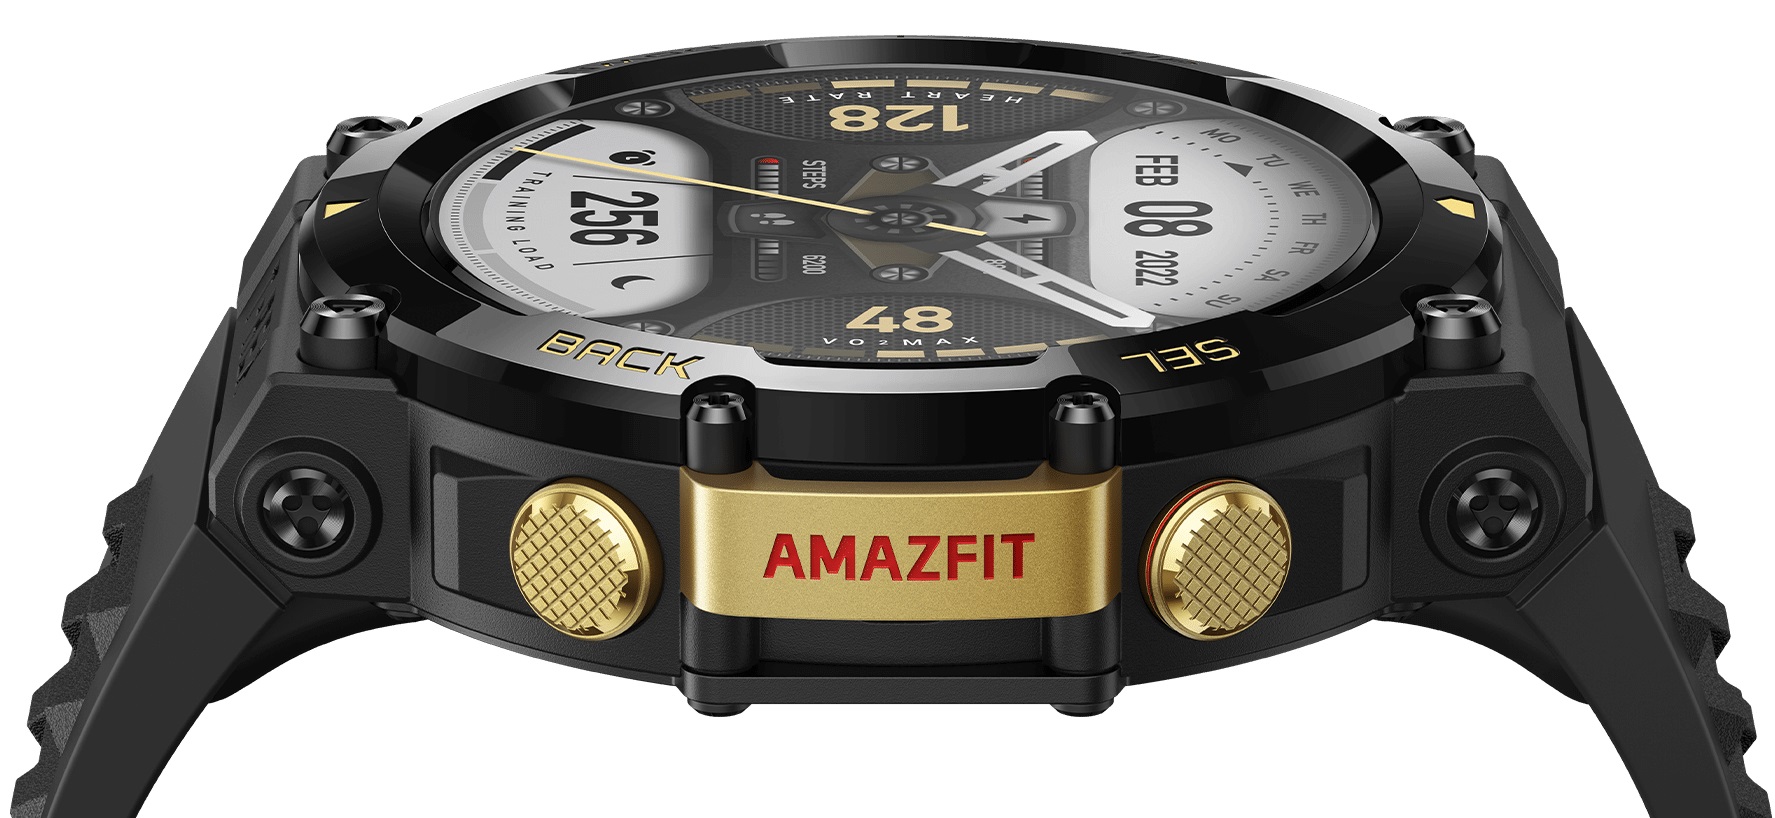 Chytré hodinky AMAZFIT TRex 2 Ember Black